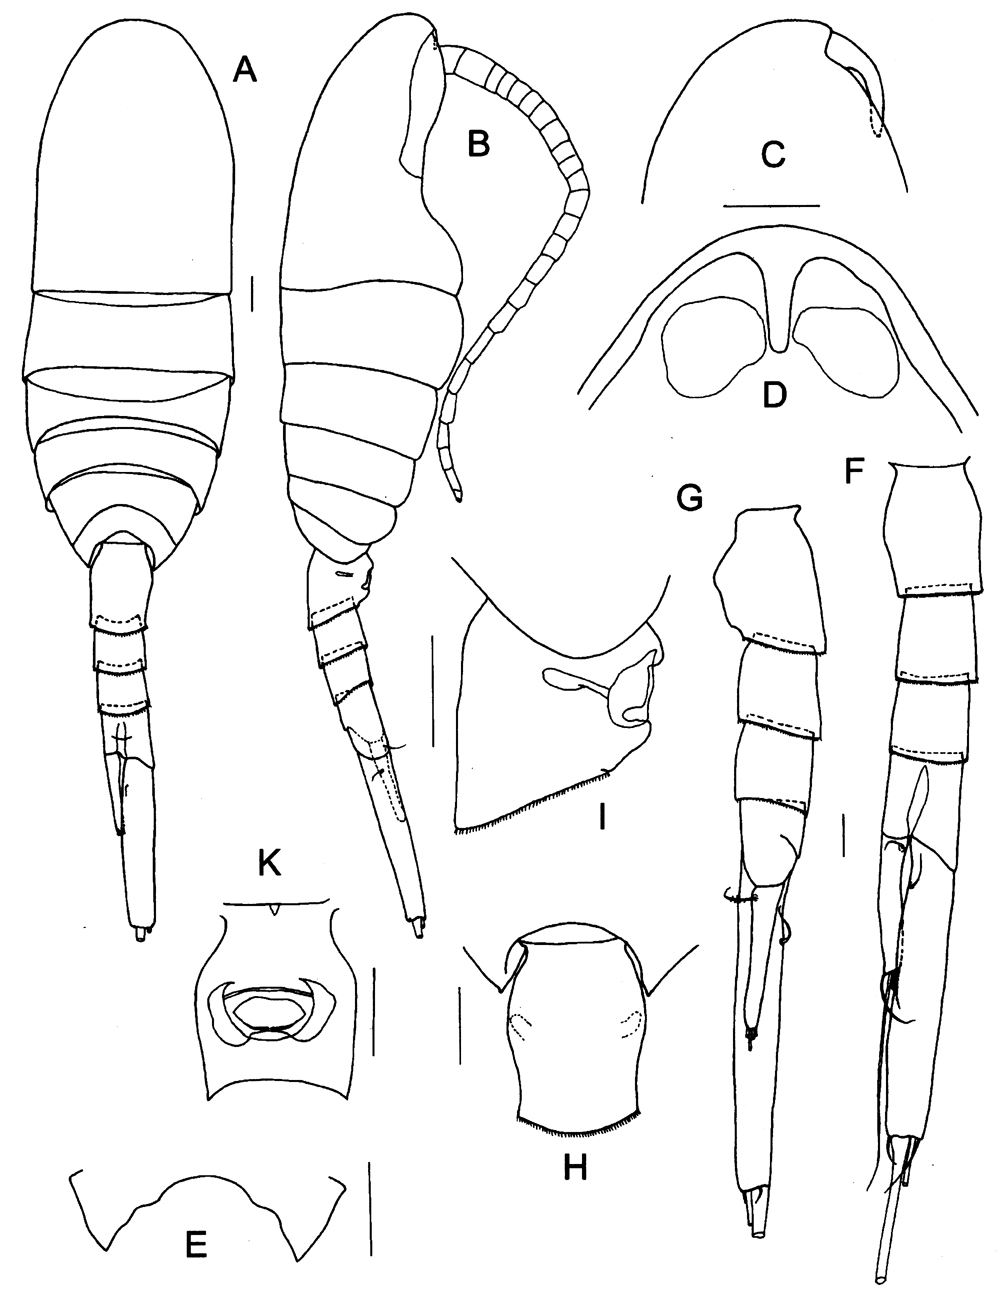 Espce Caudacalanus mirus - Planche 1 de figures morphologiques